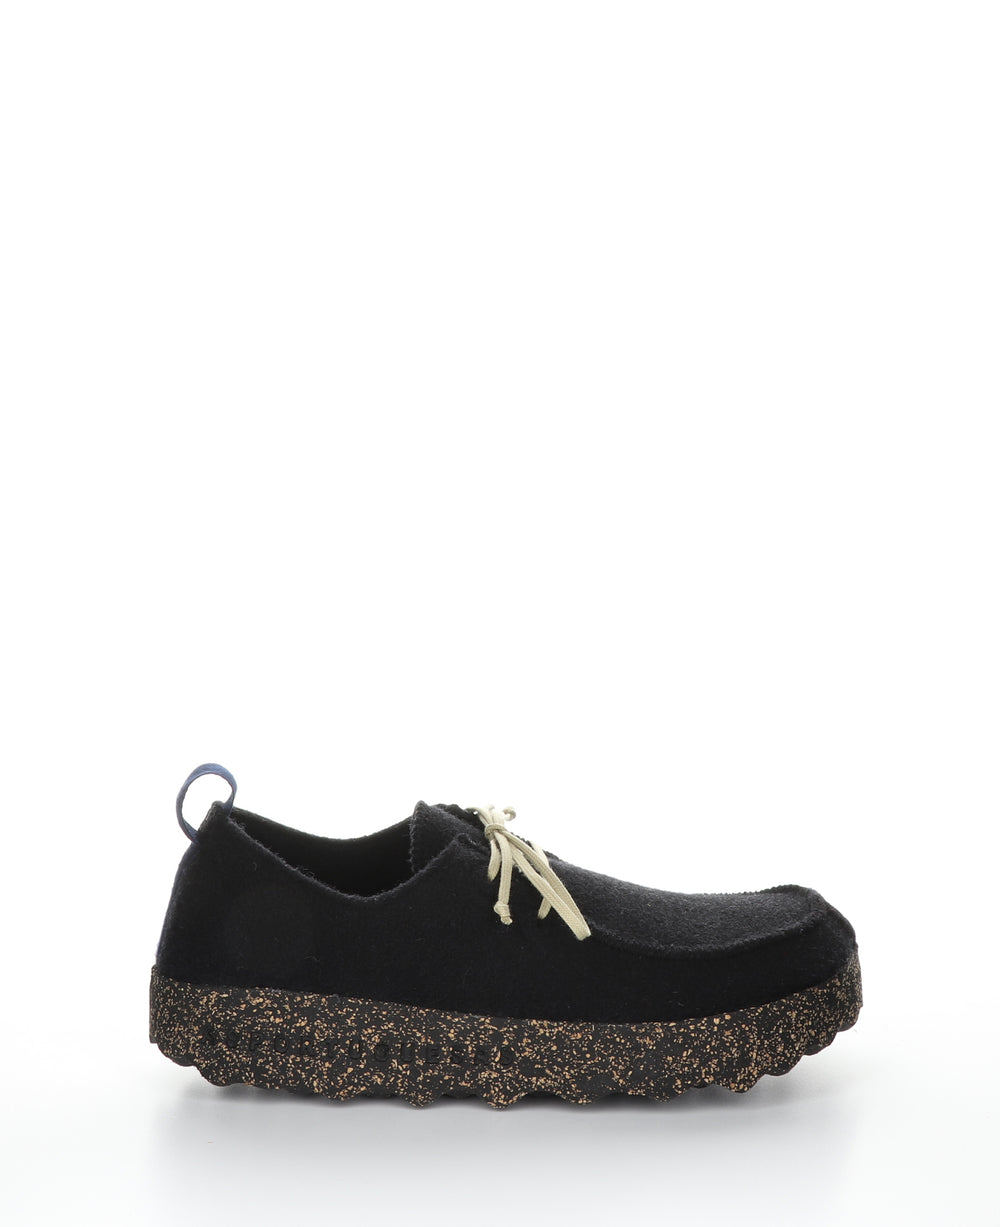 CHAT L Black Lace-up Shoes|CHAT L Chaussures à Bout Rond in Noir